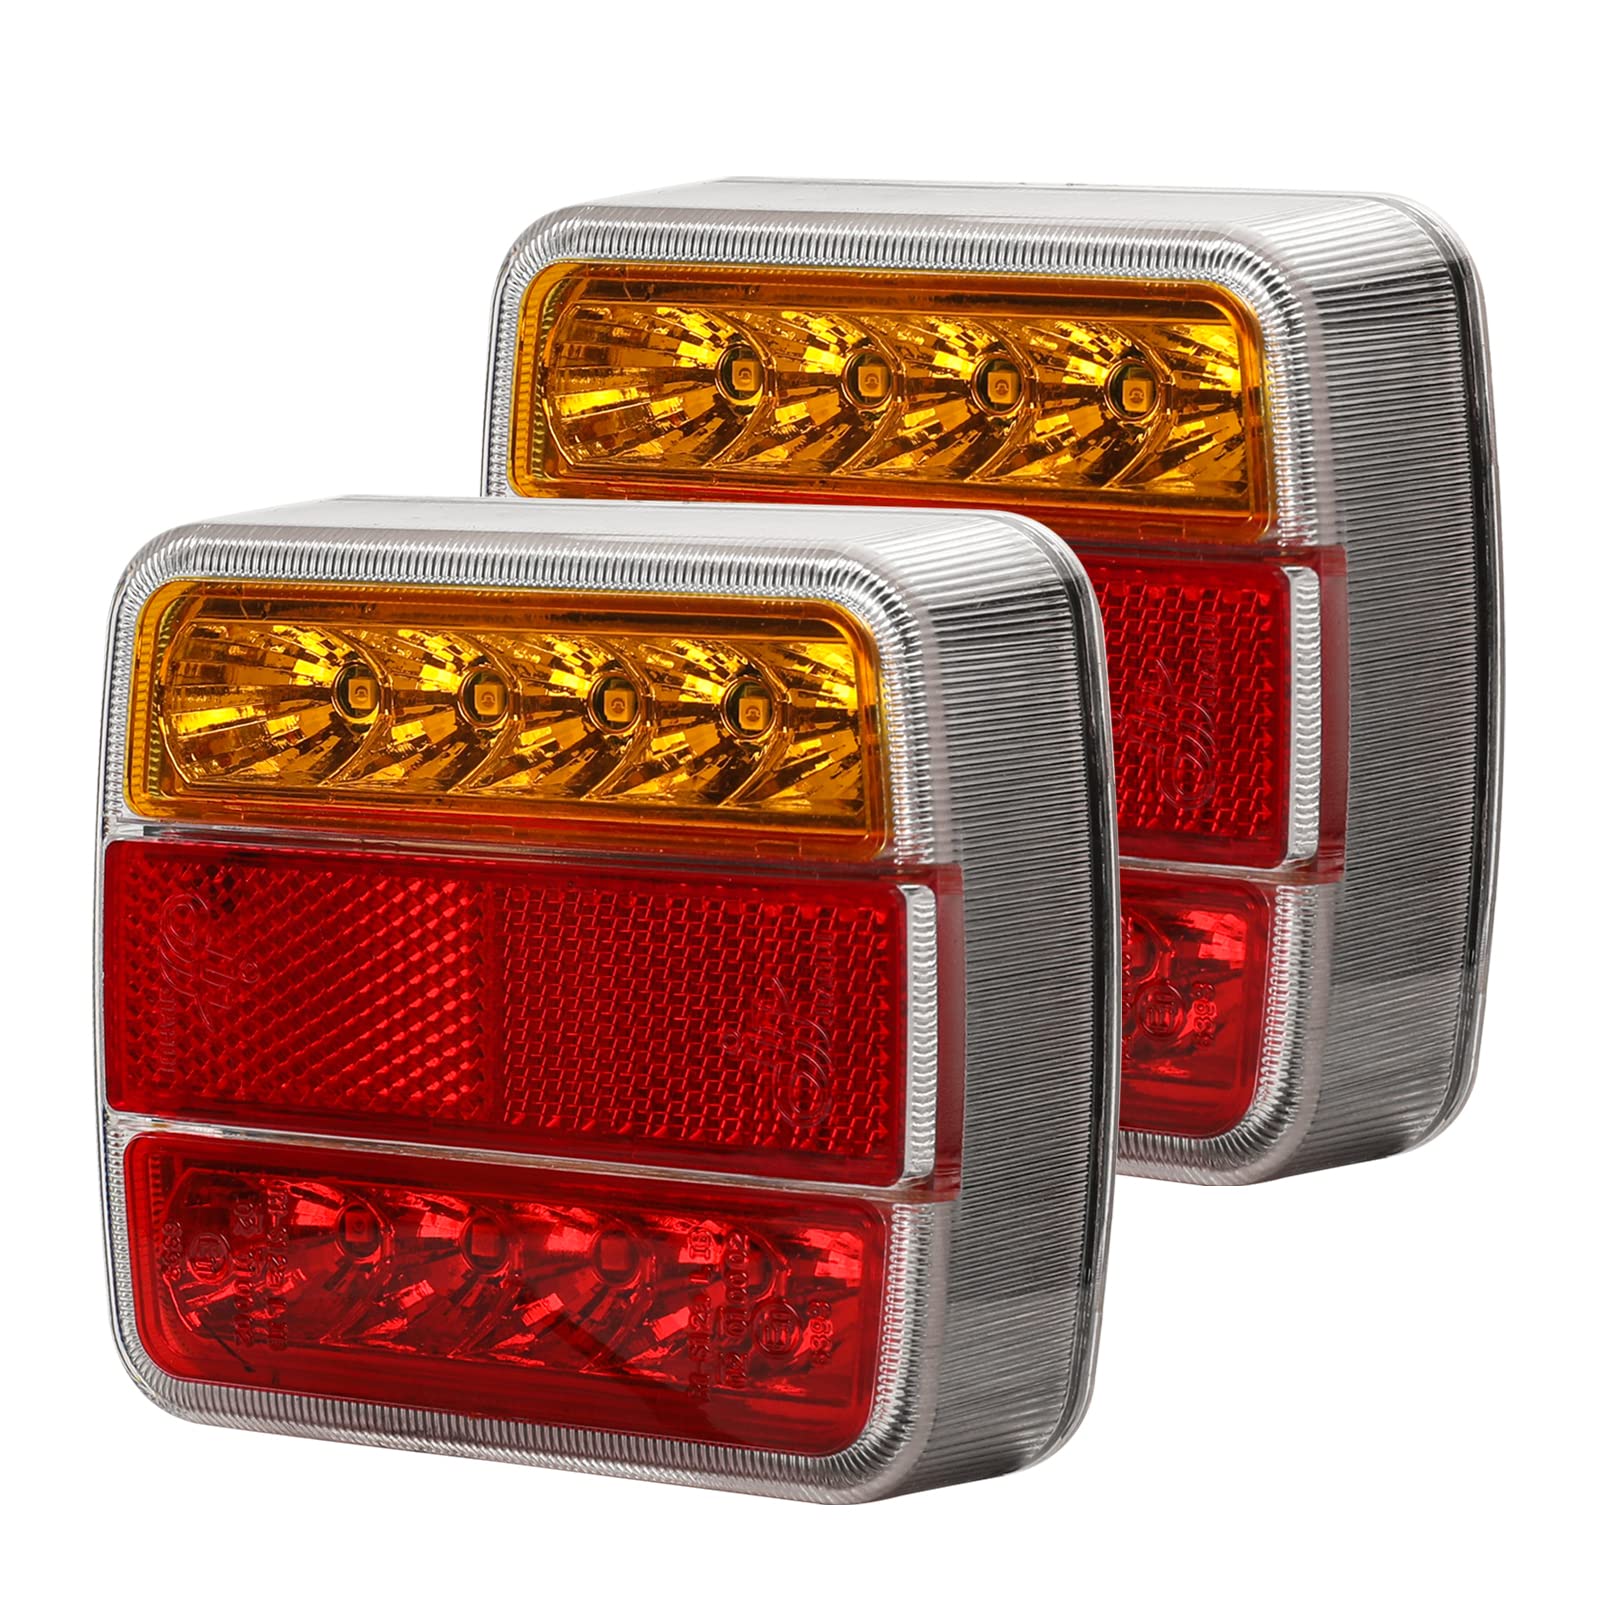 Qiping 2 Stk LED Rückleuchten Anhänger, 12V Universal LKW Rücklicht Rücklichter Heckleuchte mit Kennzeichenleuchte, Rückreflektor, E-Mark Zertifizierung von Qiping